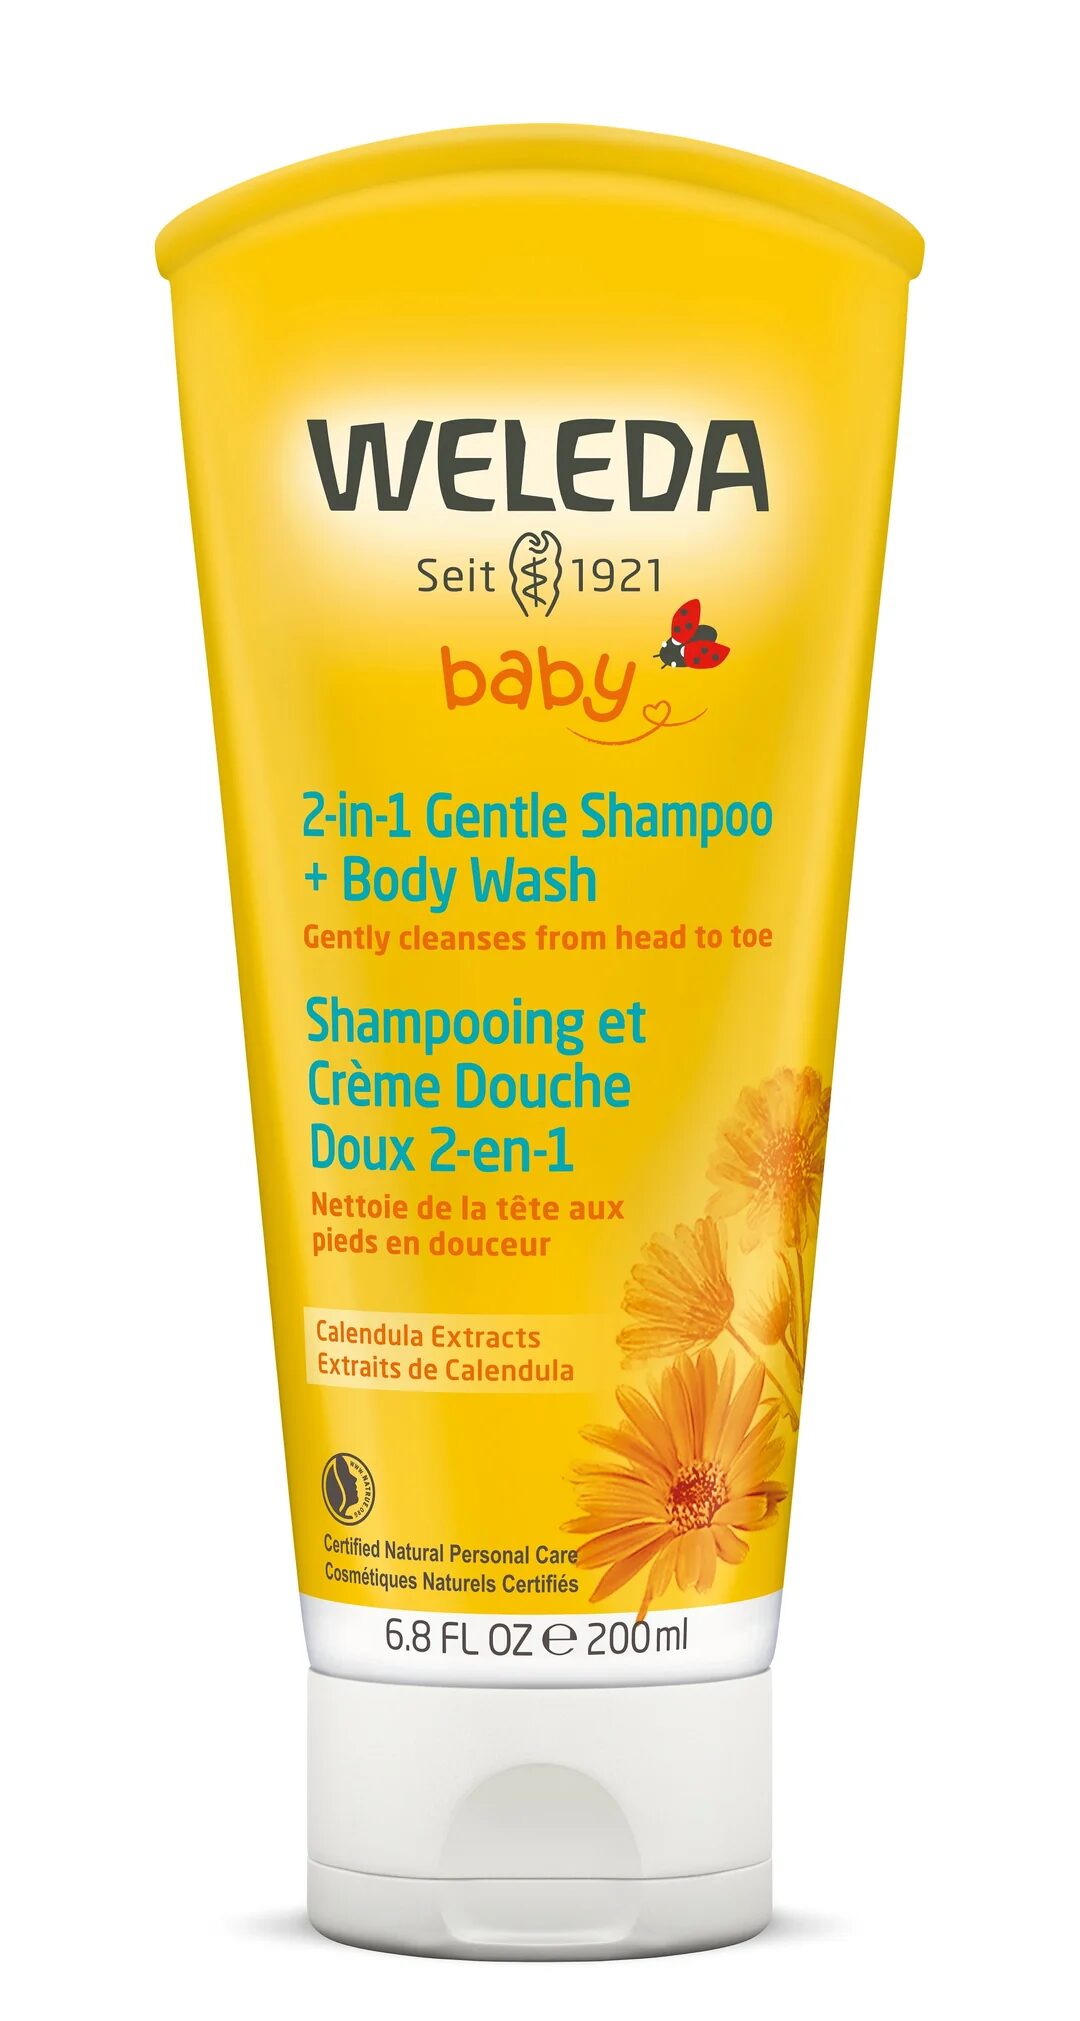 Weleda-gentle-shampoo-a